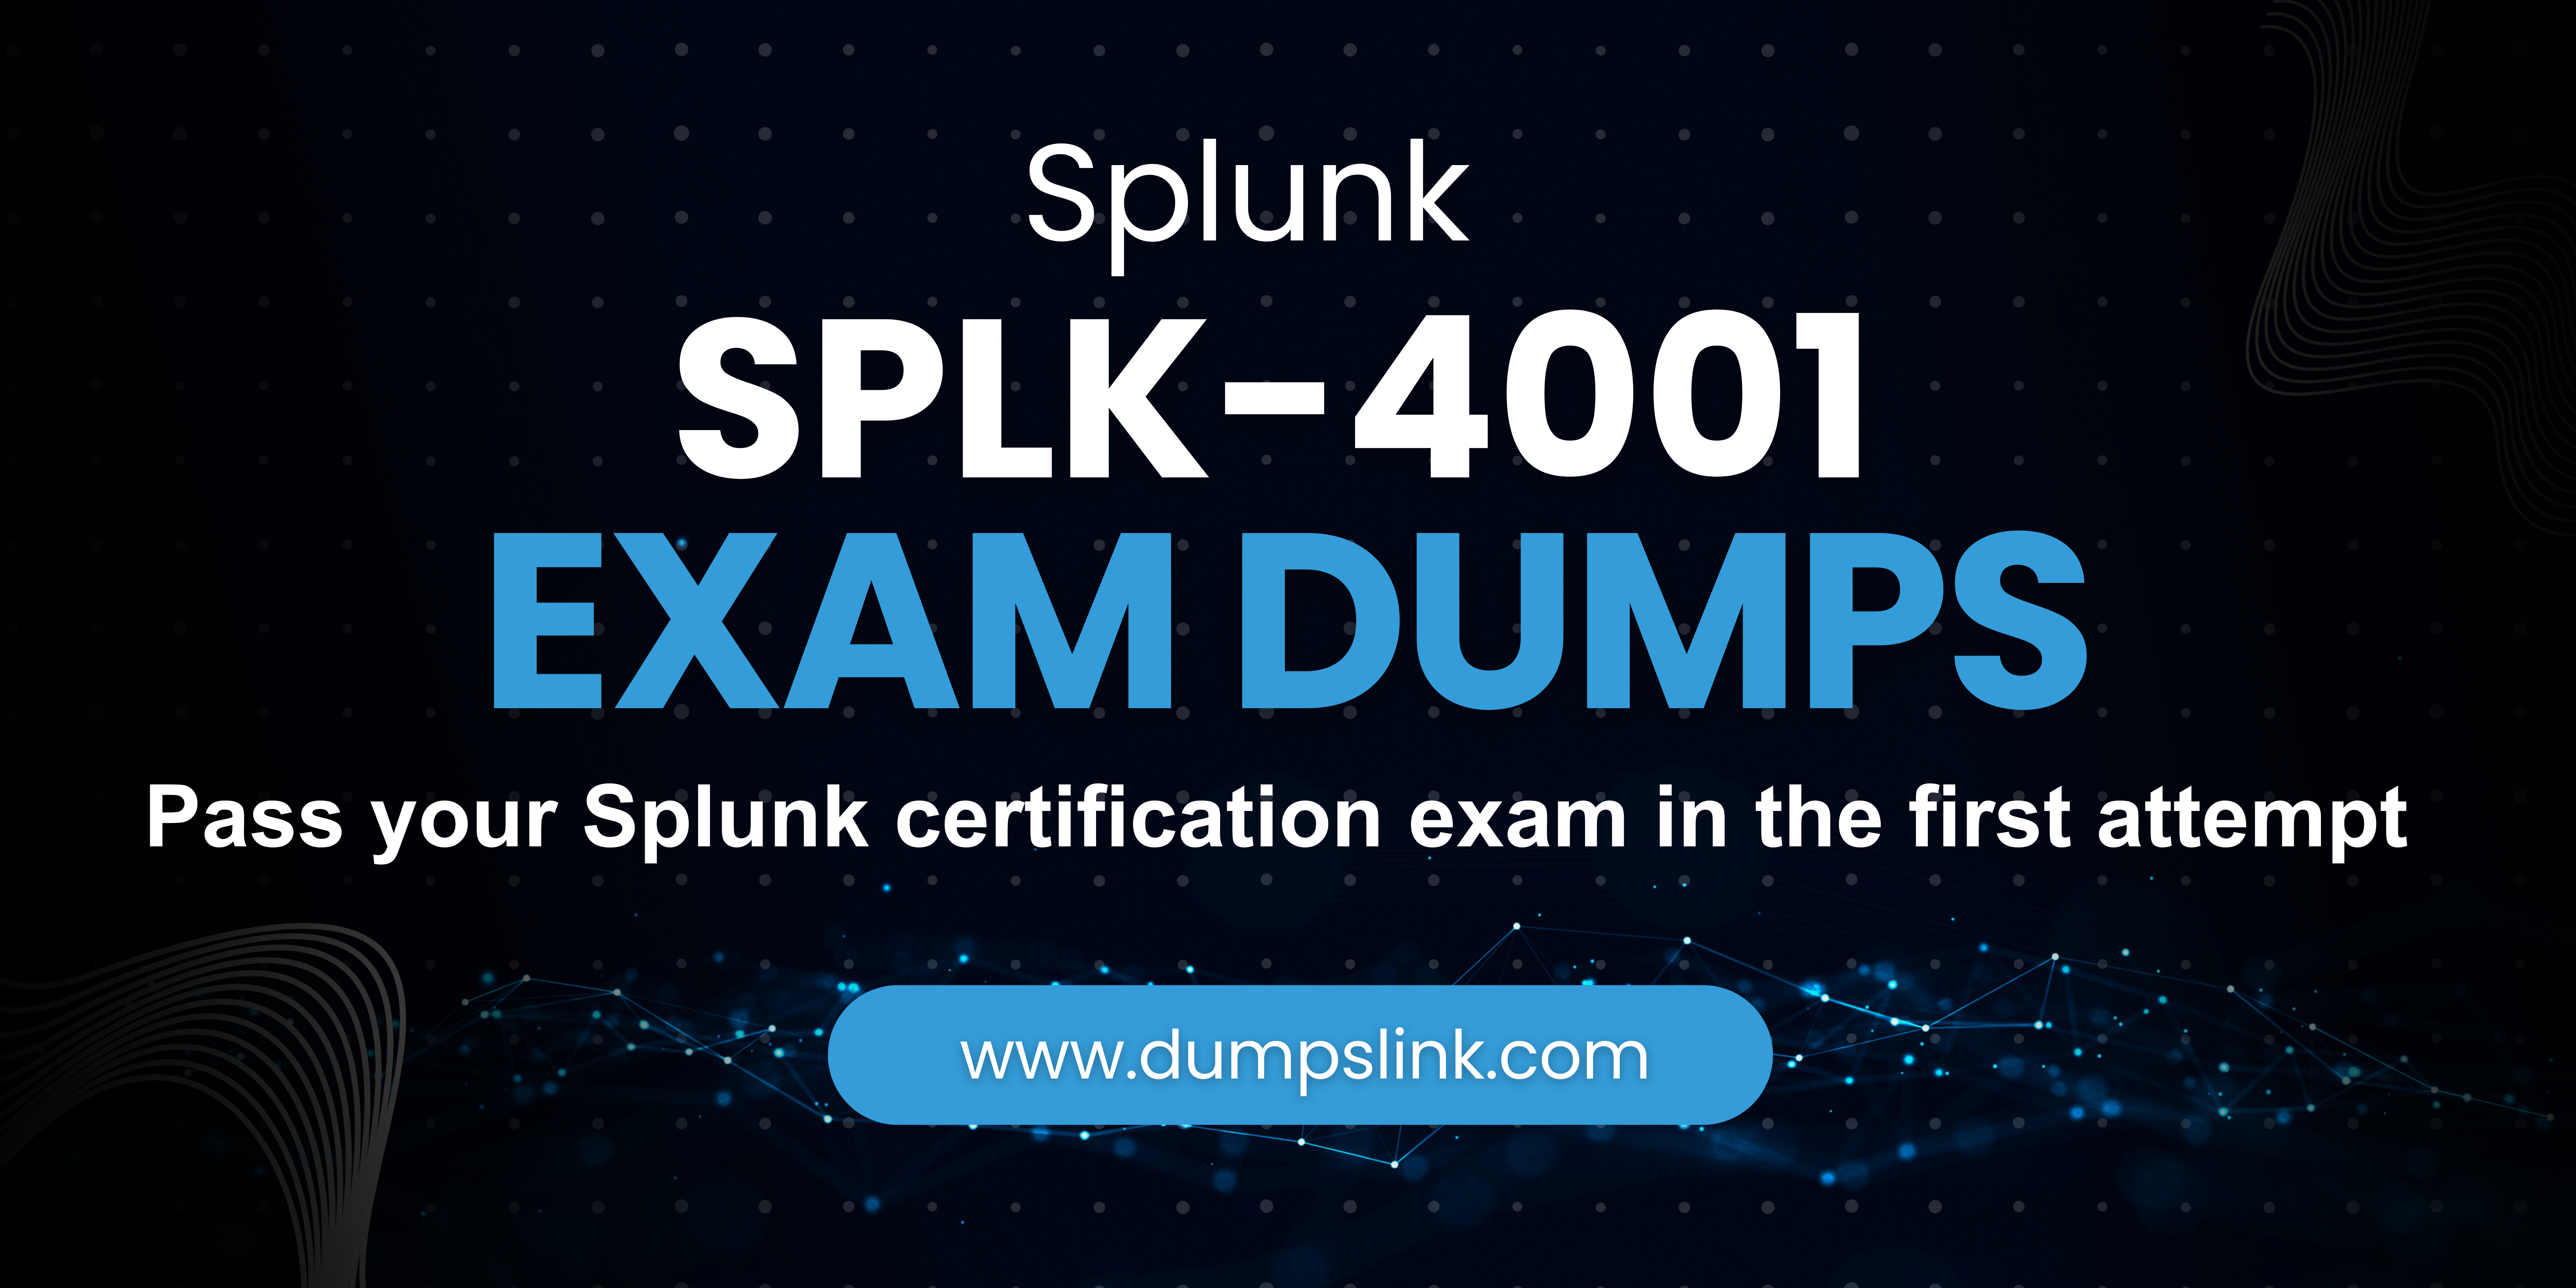 SPLK-4001 exam dumps